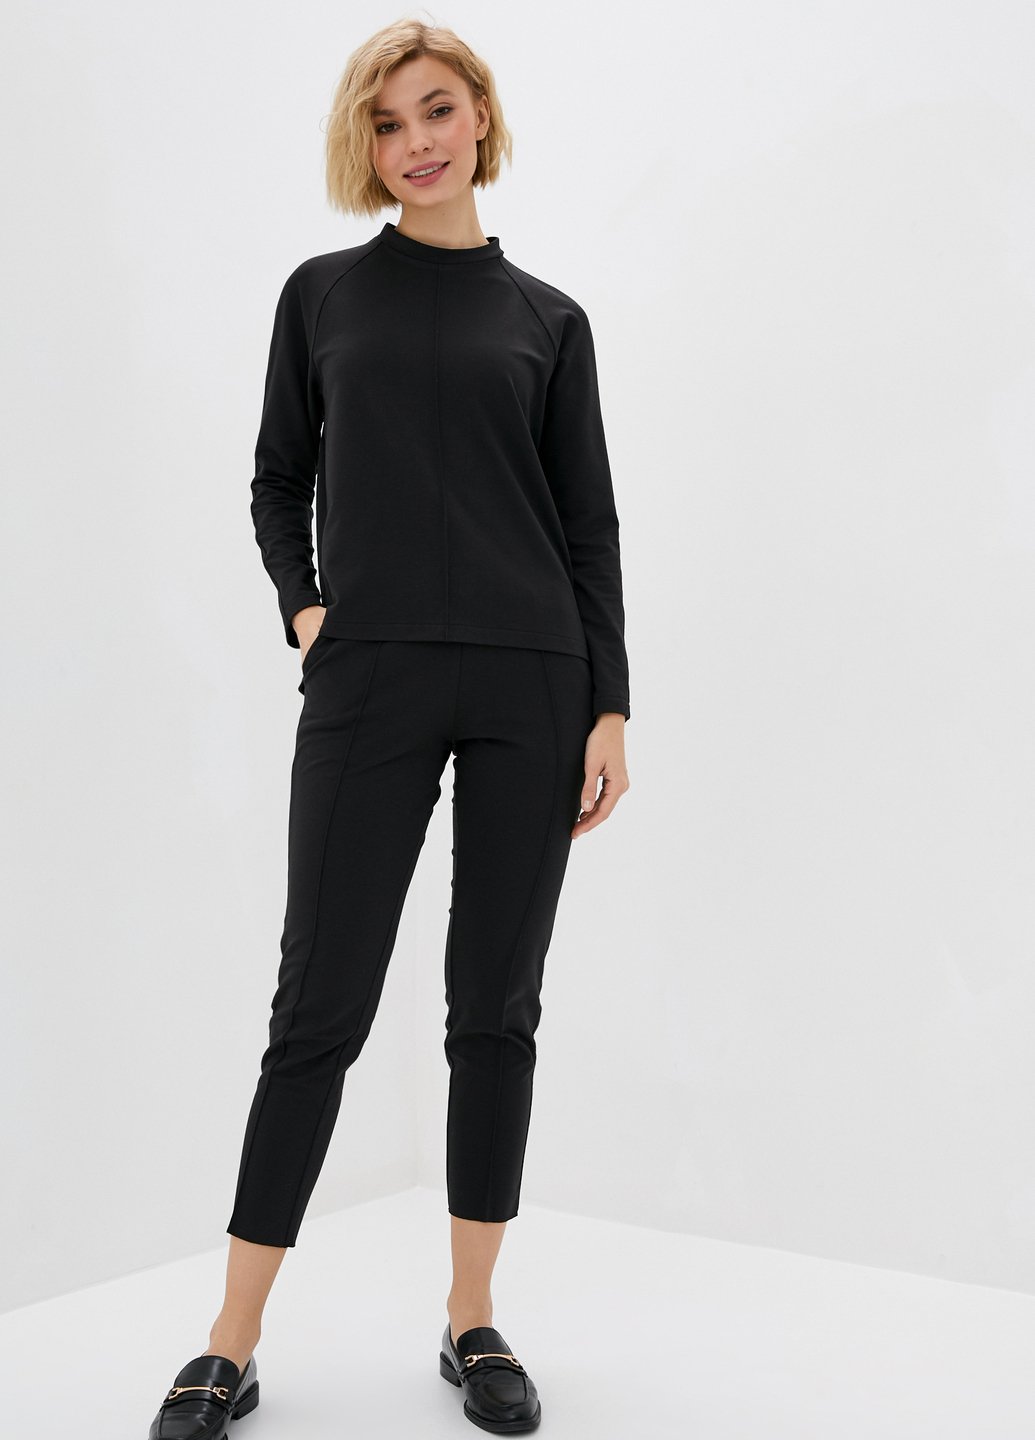 Купить Летний костюм женский черного цвета Merlini Питерборо 100000079, размер 42-44 в интернет-магазине